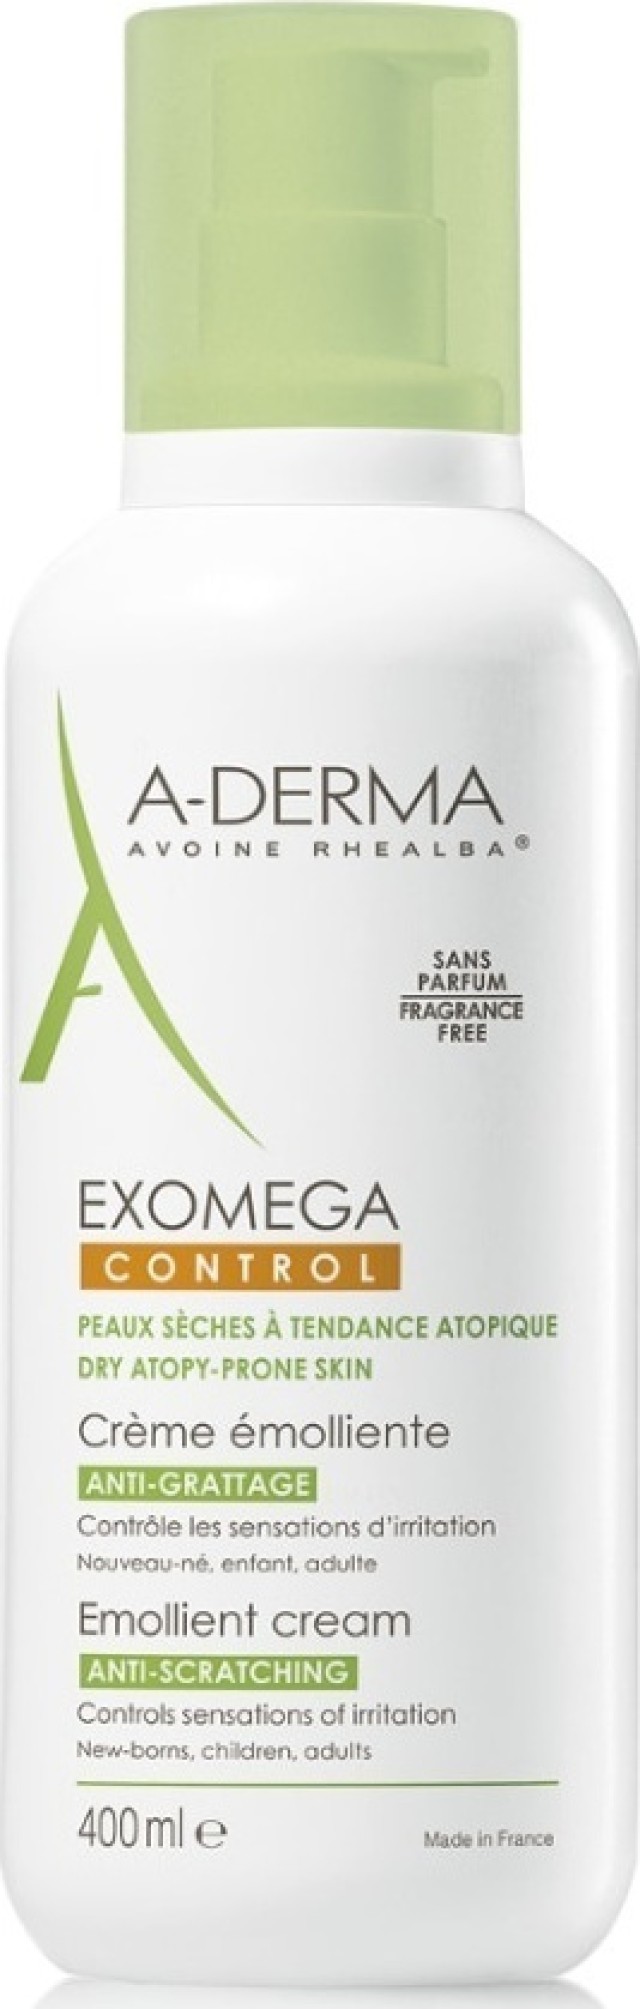 A-Derma Exomega Control Μαλακτική Κρέμα Σώματος Κατά του Κνησμού για Ξηρές Επιδερμίδες, 400ml